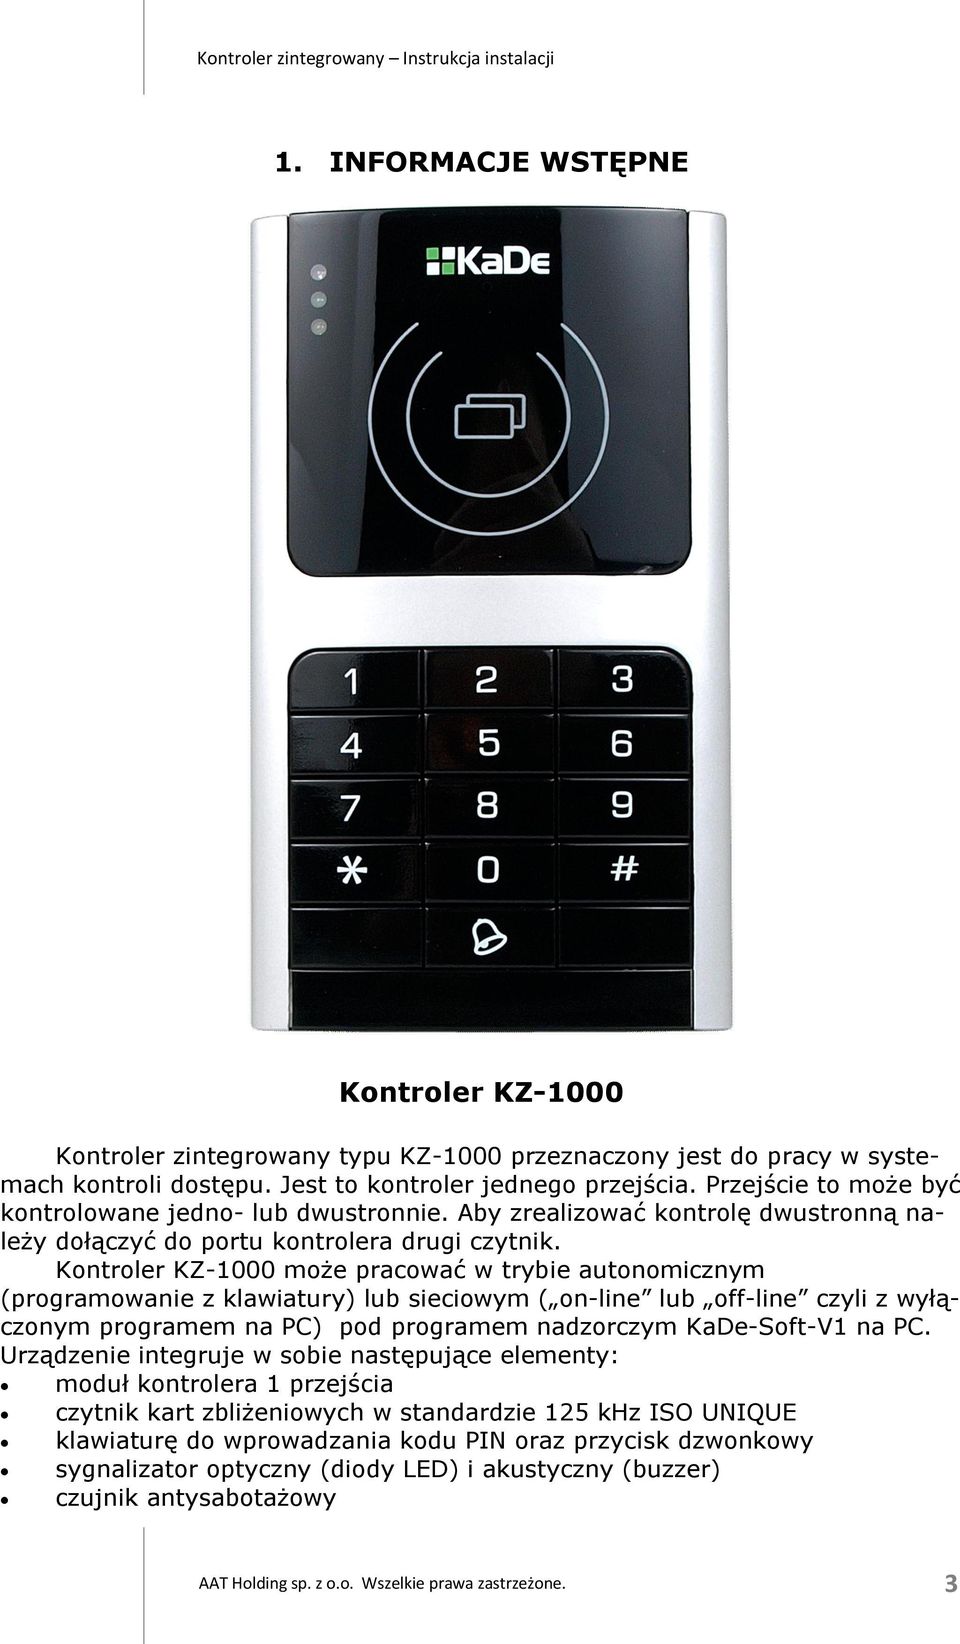 Kontroler KZ-1000 może pracować w trybie autonomicznym (programowanie z klawiatury) lub sieciowym ( on-line lub off-line czyli z wyłączonym programem na PC) pod programem nadzorczym KaDe-Soft-V1 na